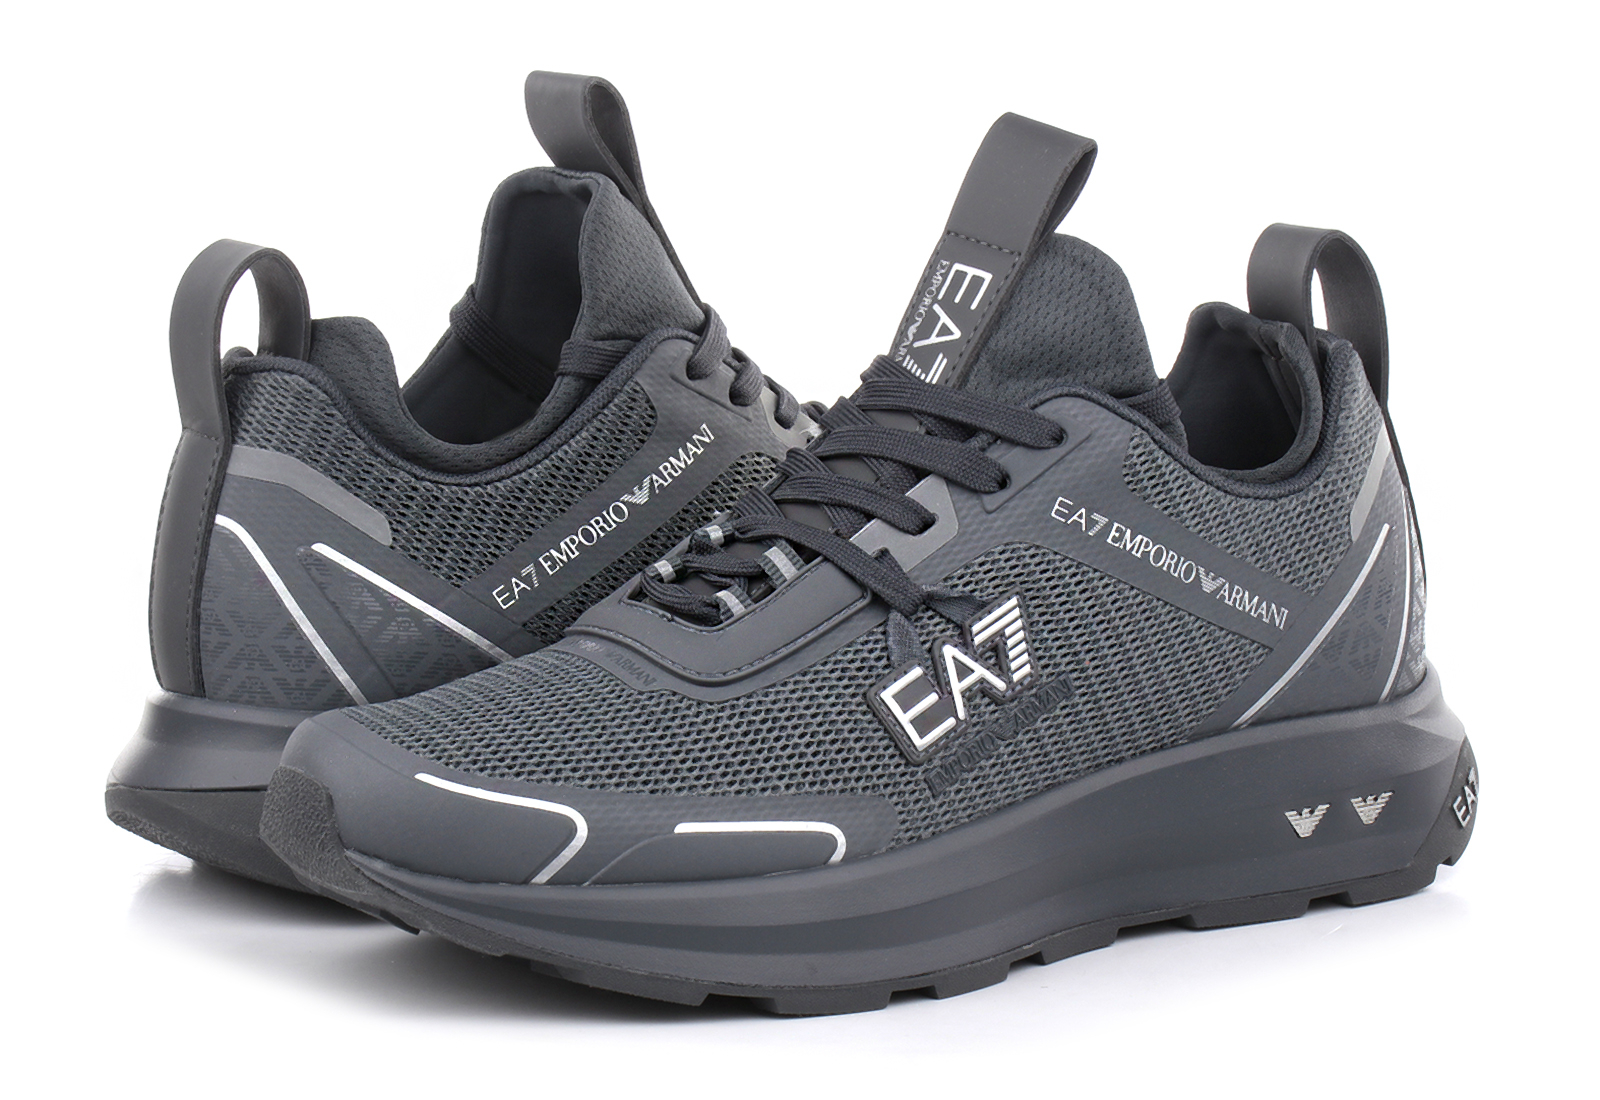 EA7 Emporio Armani Sneakers - Altura - X089-XK234-641 - Online